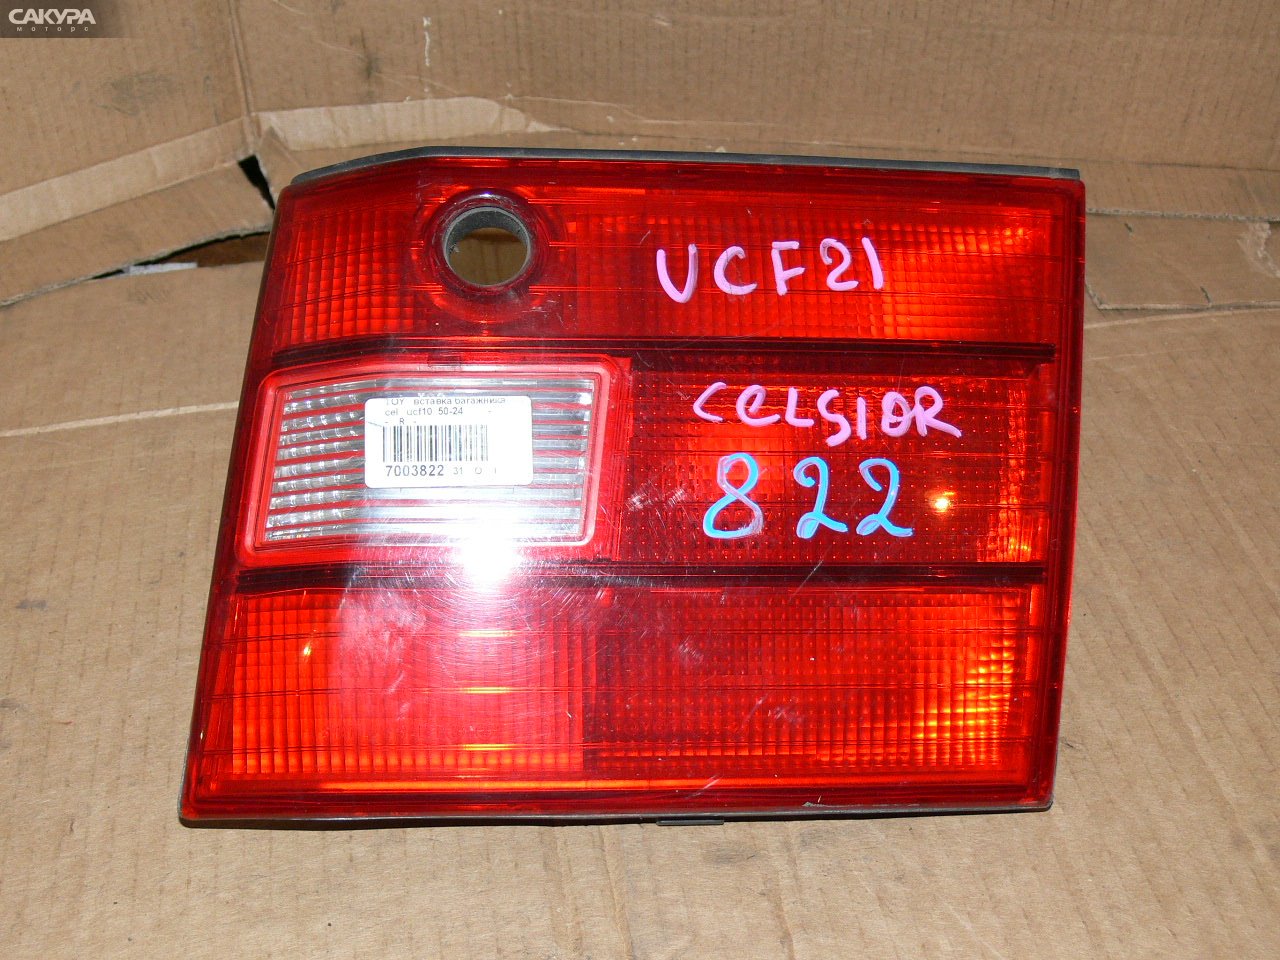 Фонарь вставка багажника правый Toyota Celsior UCF21: купить в Сакура Иркутск.